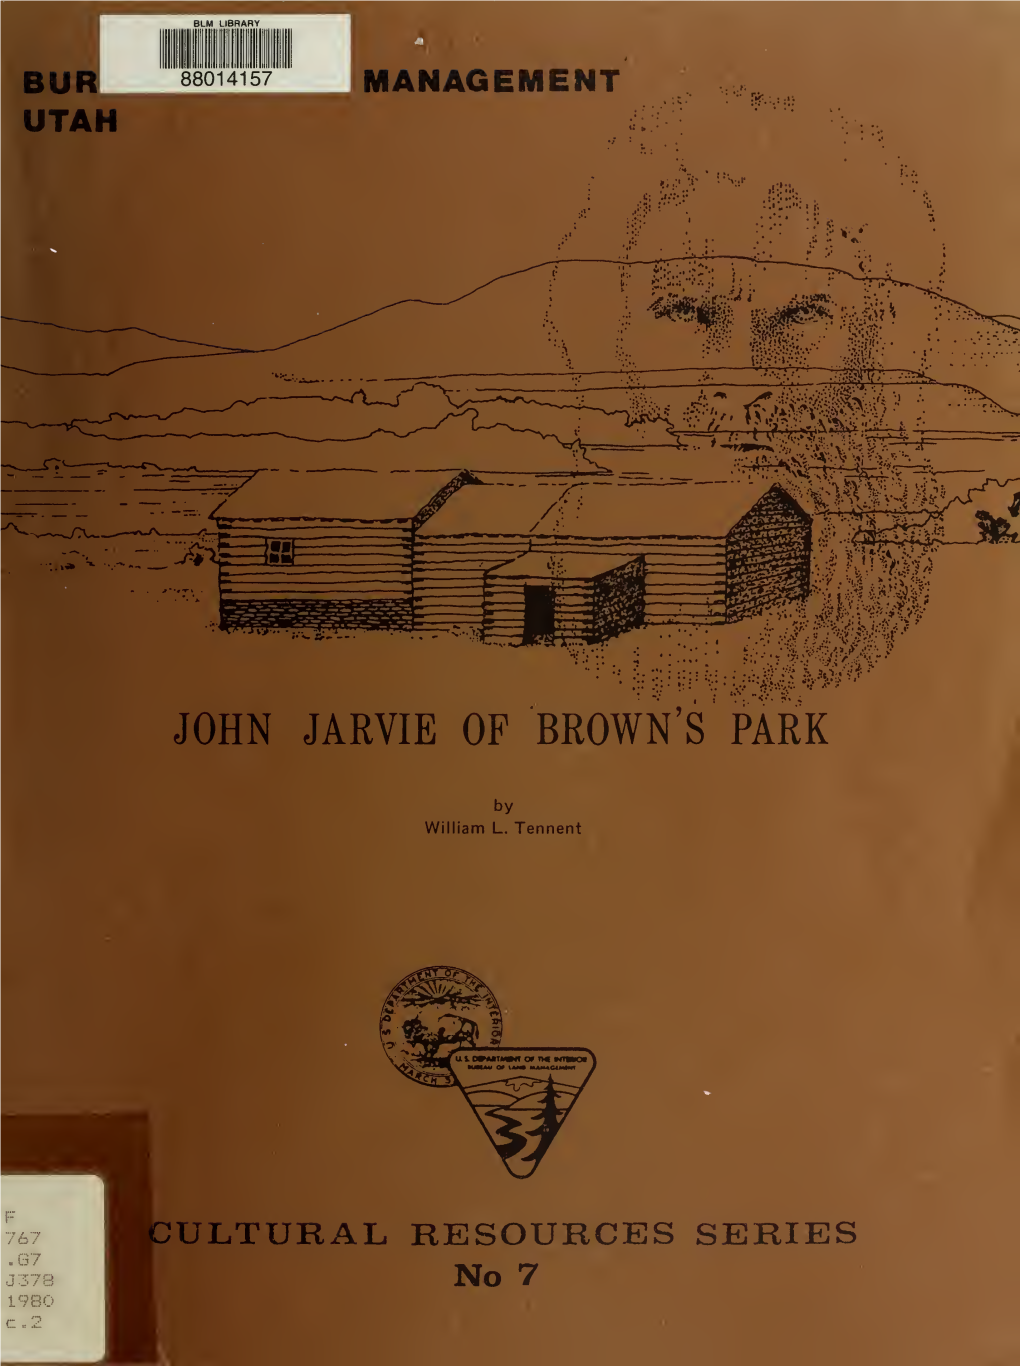 John Jarvie of Brown's Park